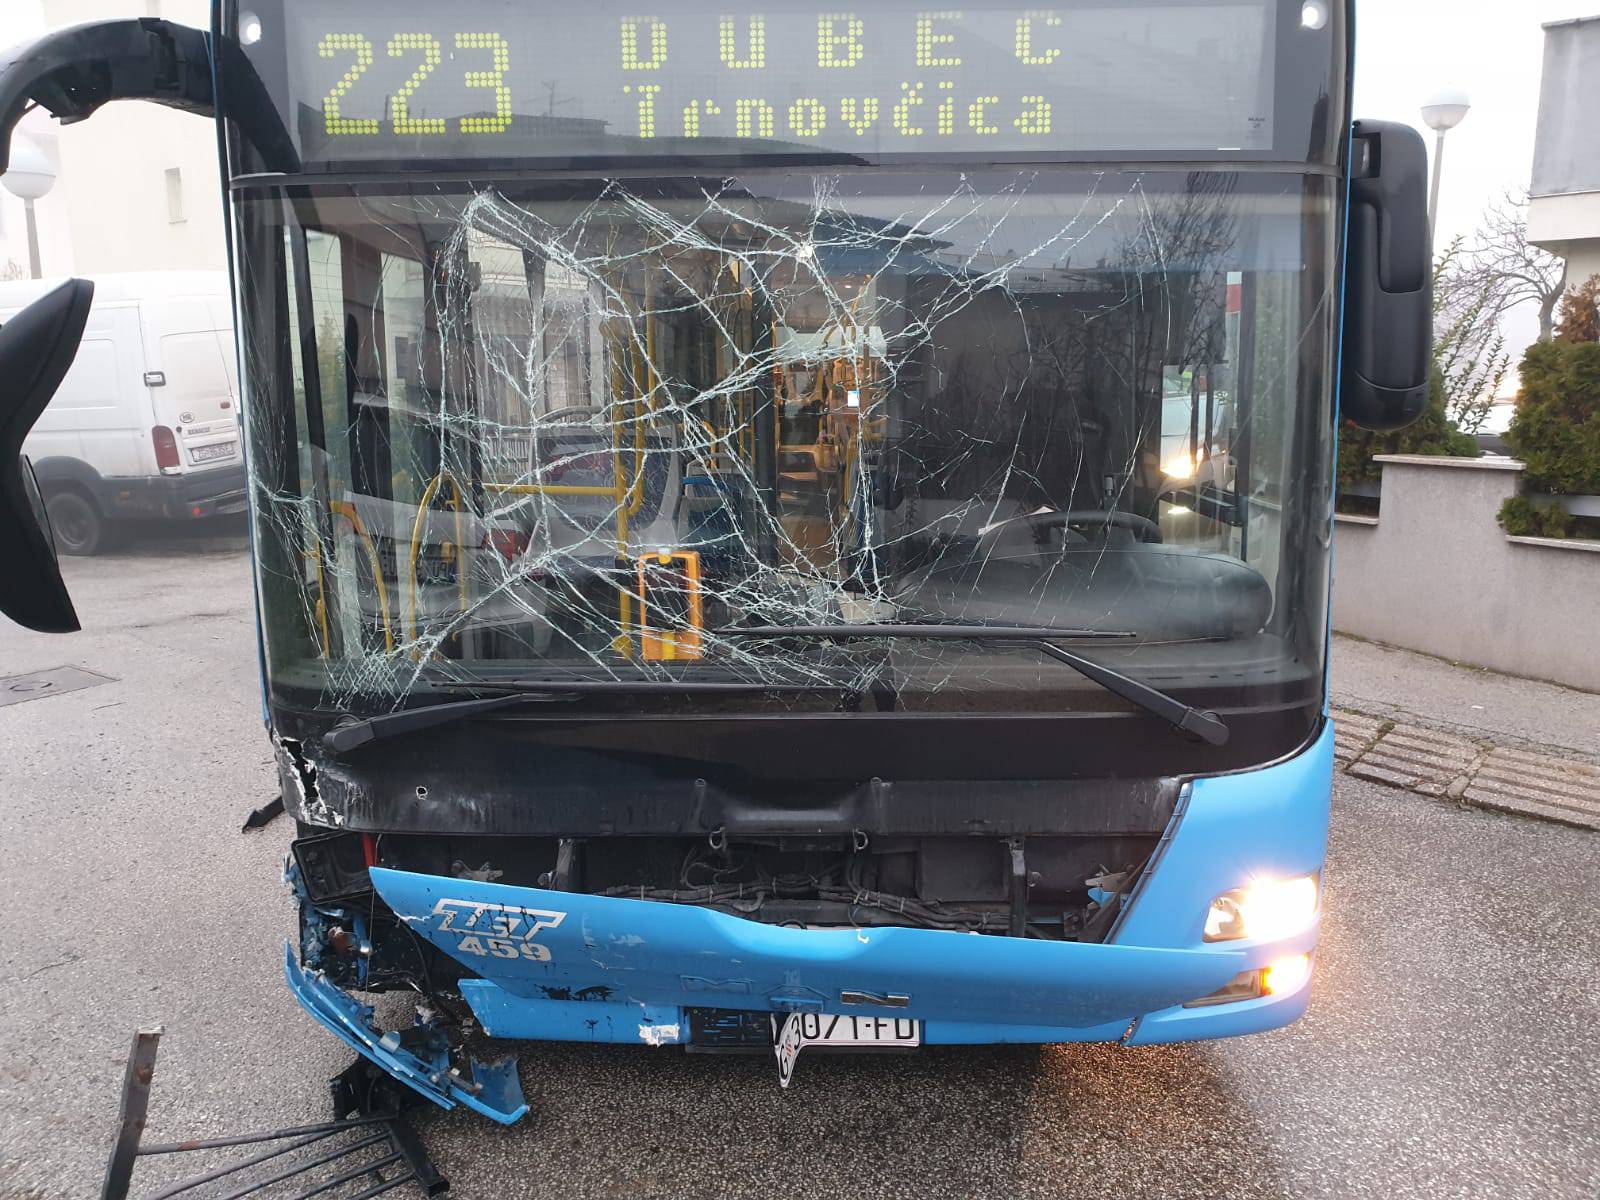 Autobus probio ogradu i udario u auto: Otkazao mu je volan?!